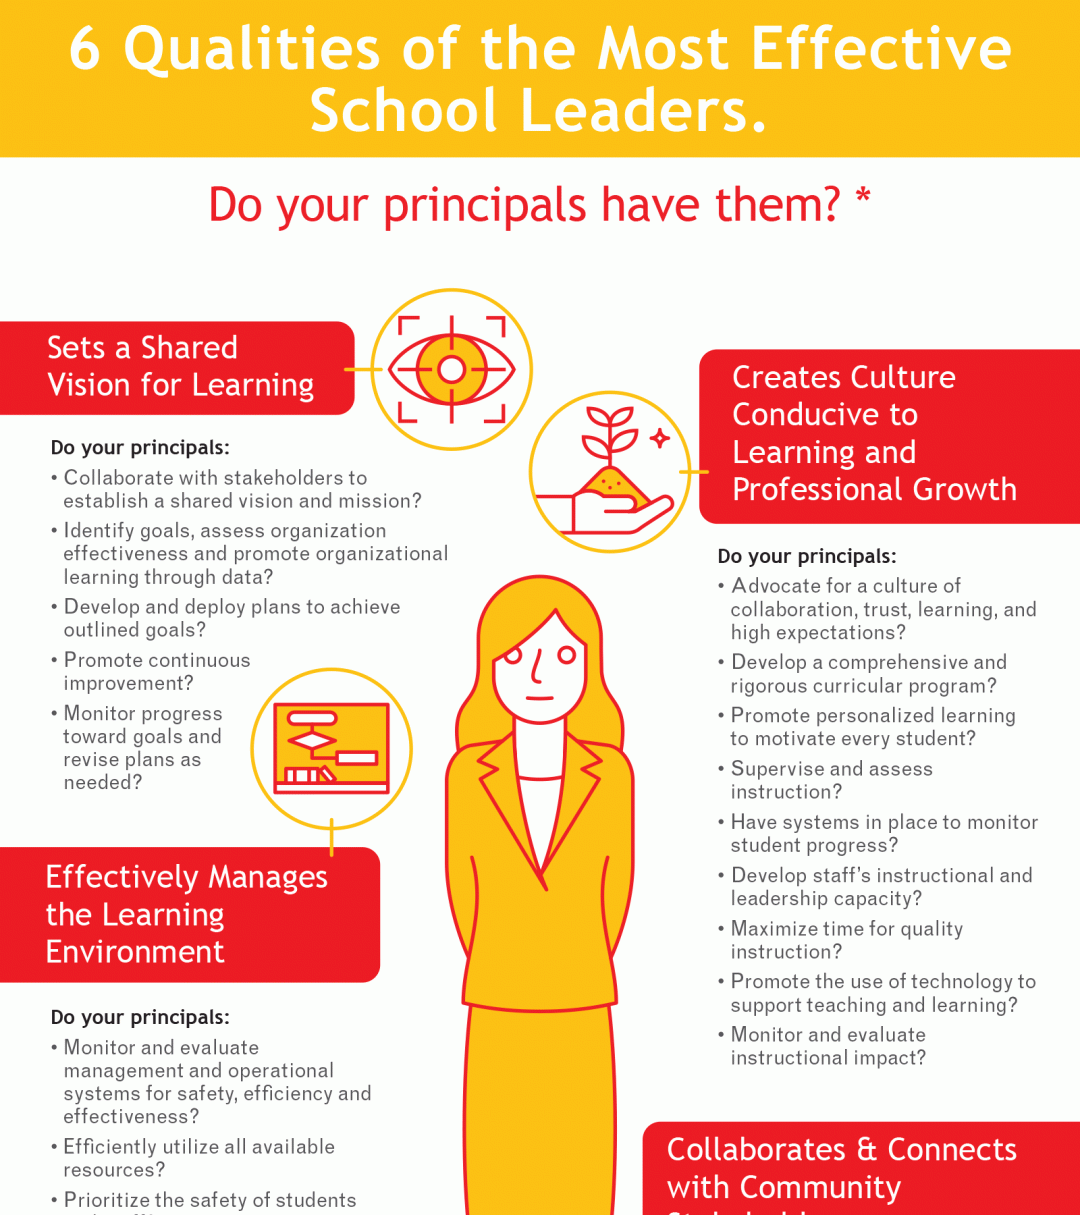 Effective School Leaders